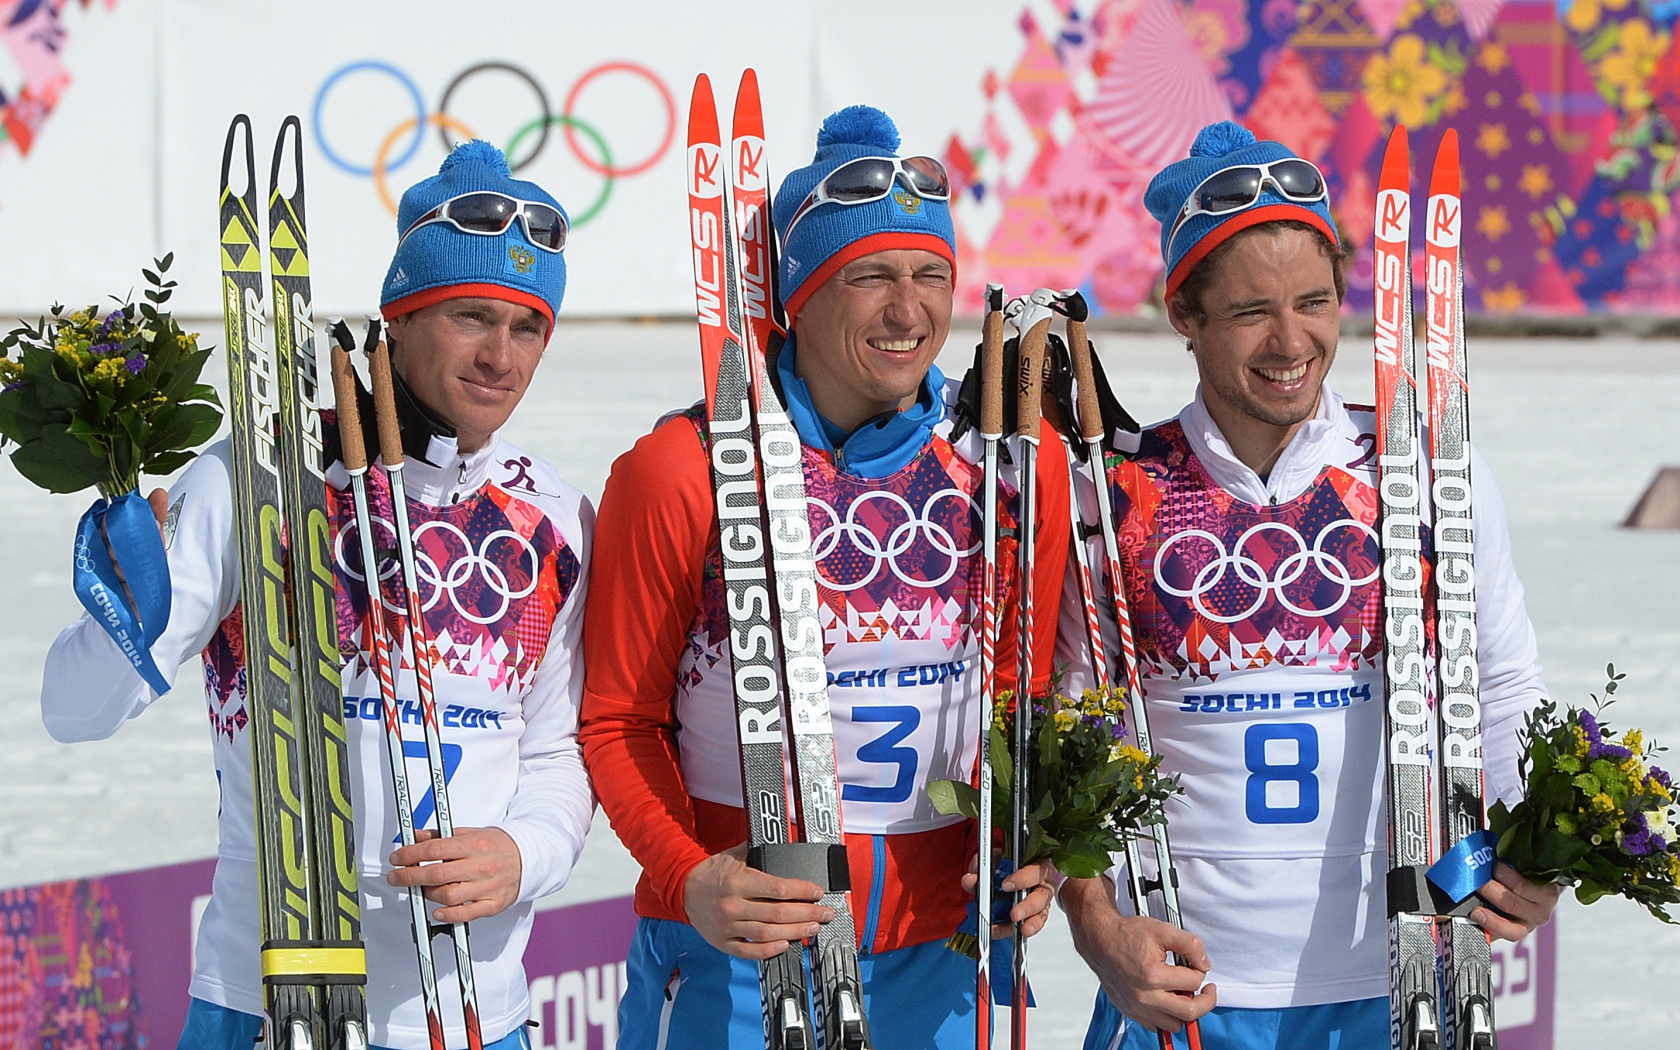 Обладатель золотой медали в дисциплине лыжные гонки Александр Легков на олимпиаде в Сочи